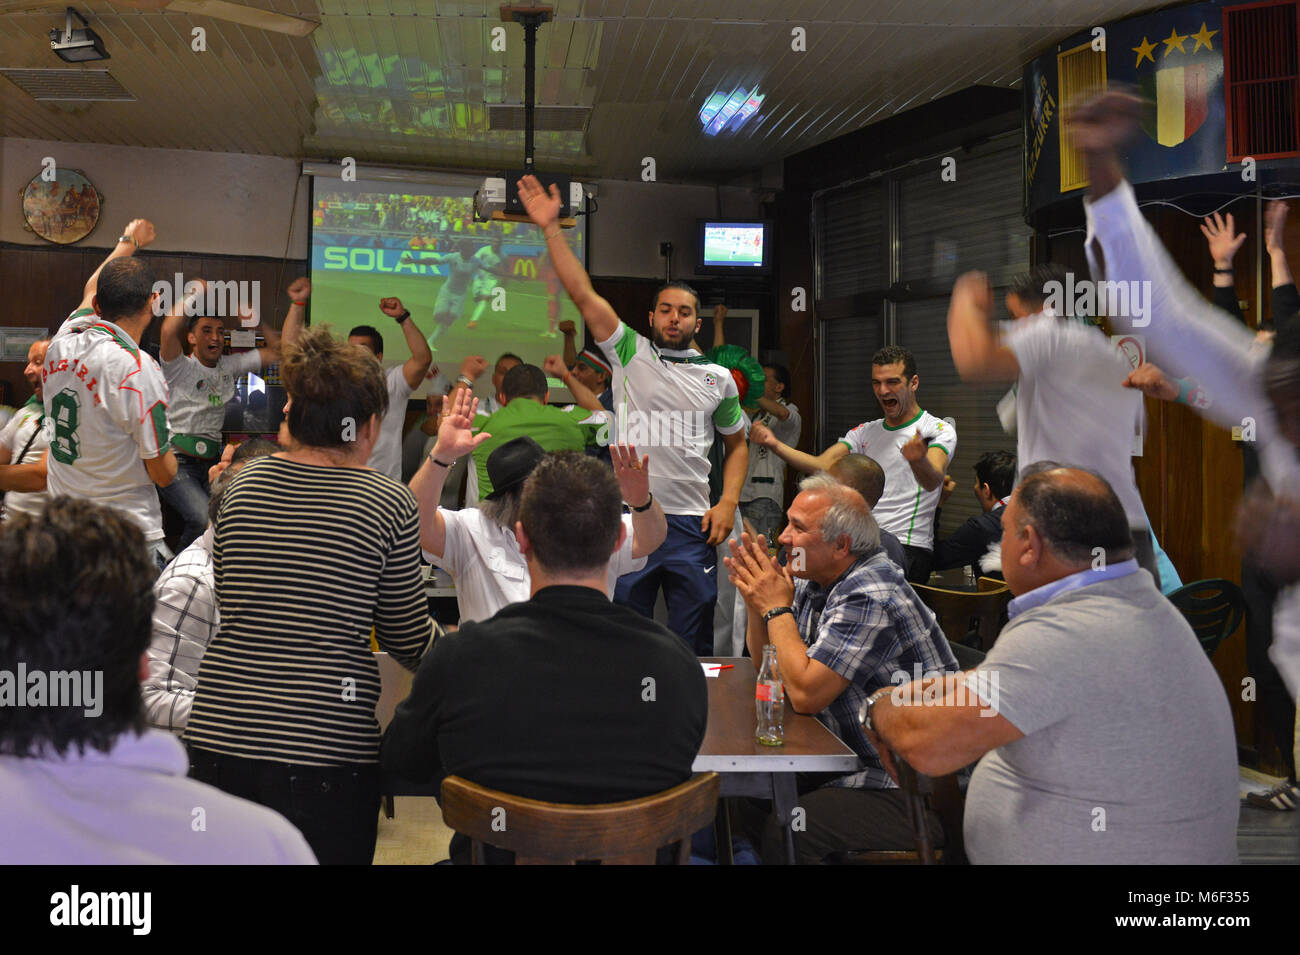 Bruxelles. Sostenitori algerino celebrare durante il campionato mondiale di calcio, Molenbeek. Il Belgio. Foto Stock